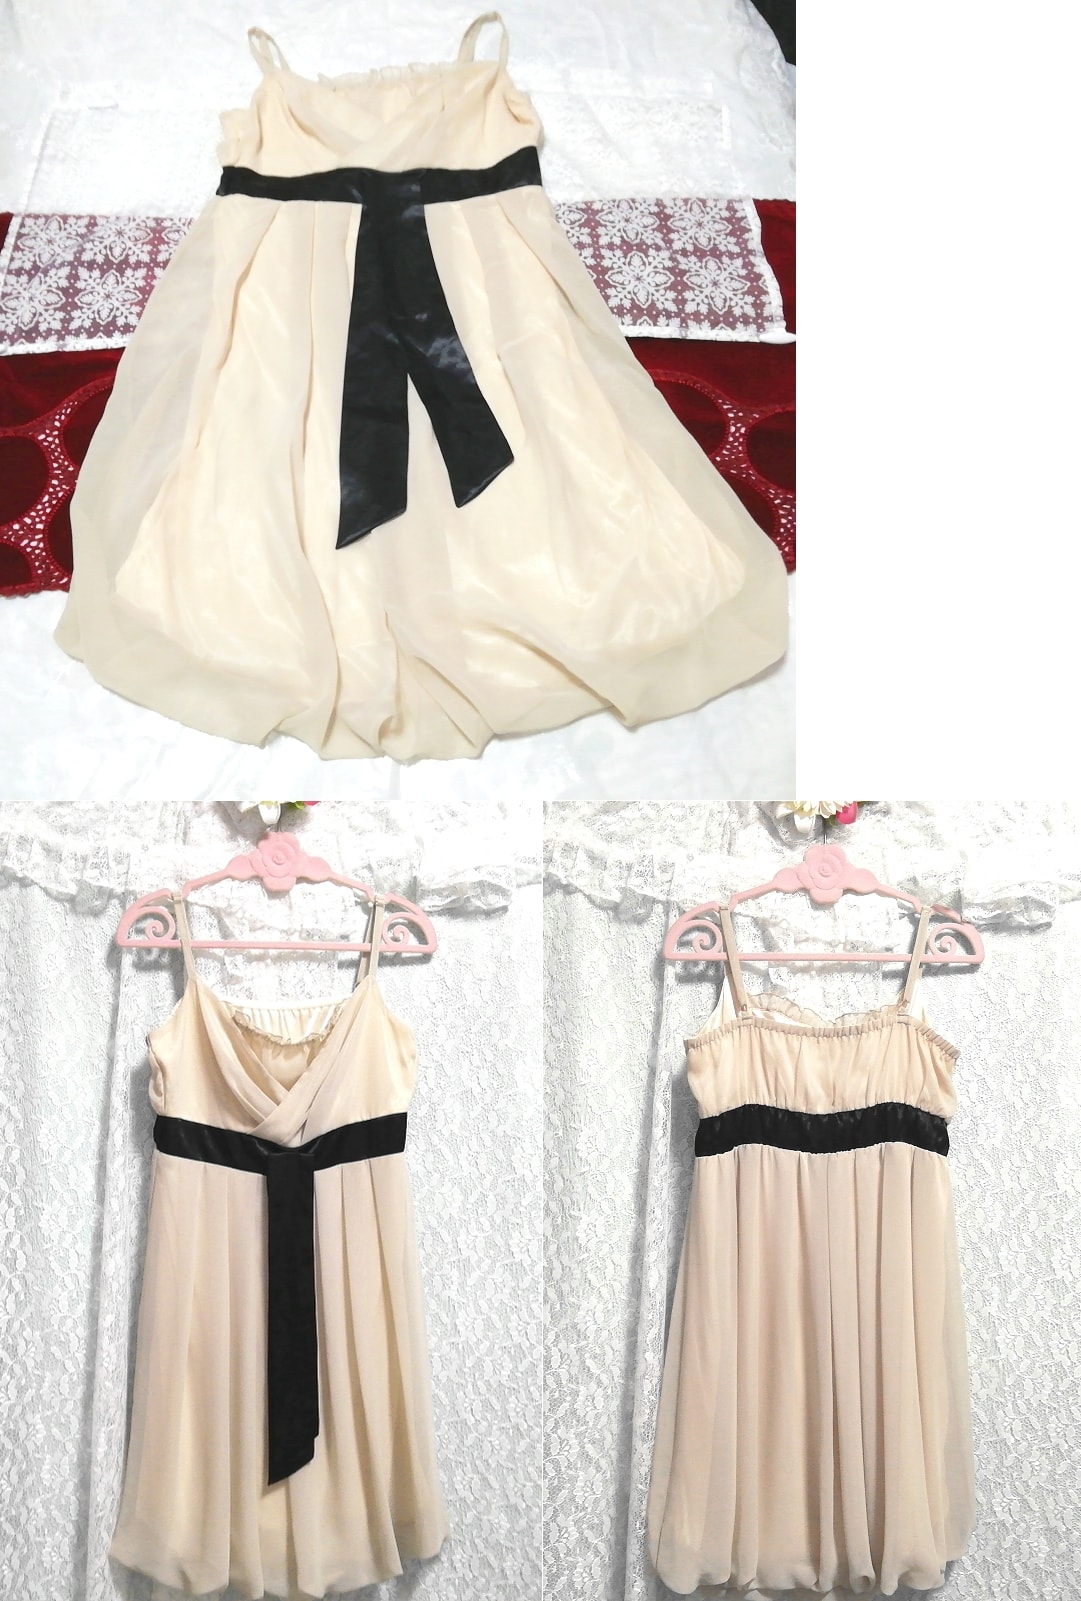 Белый черный пояс с цветочным принтом, пеньюар, ночная рубашка, камзол, цельное шифоновое платье, юбка длиной до колена, размер м